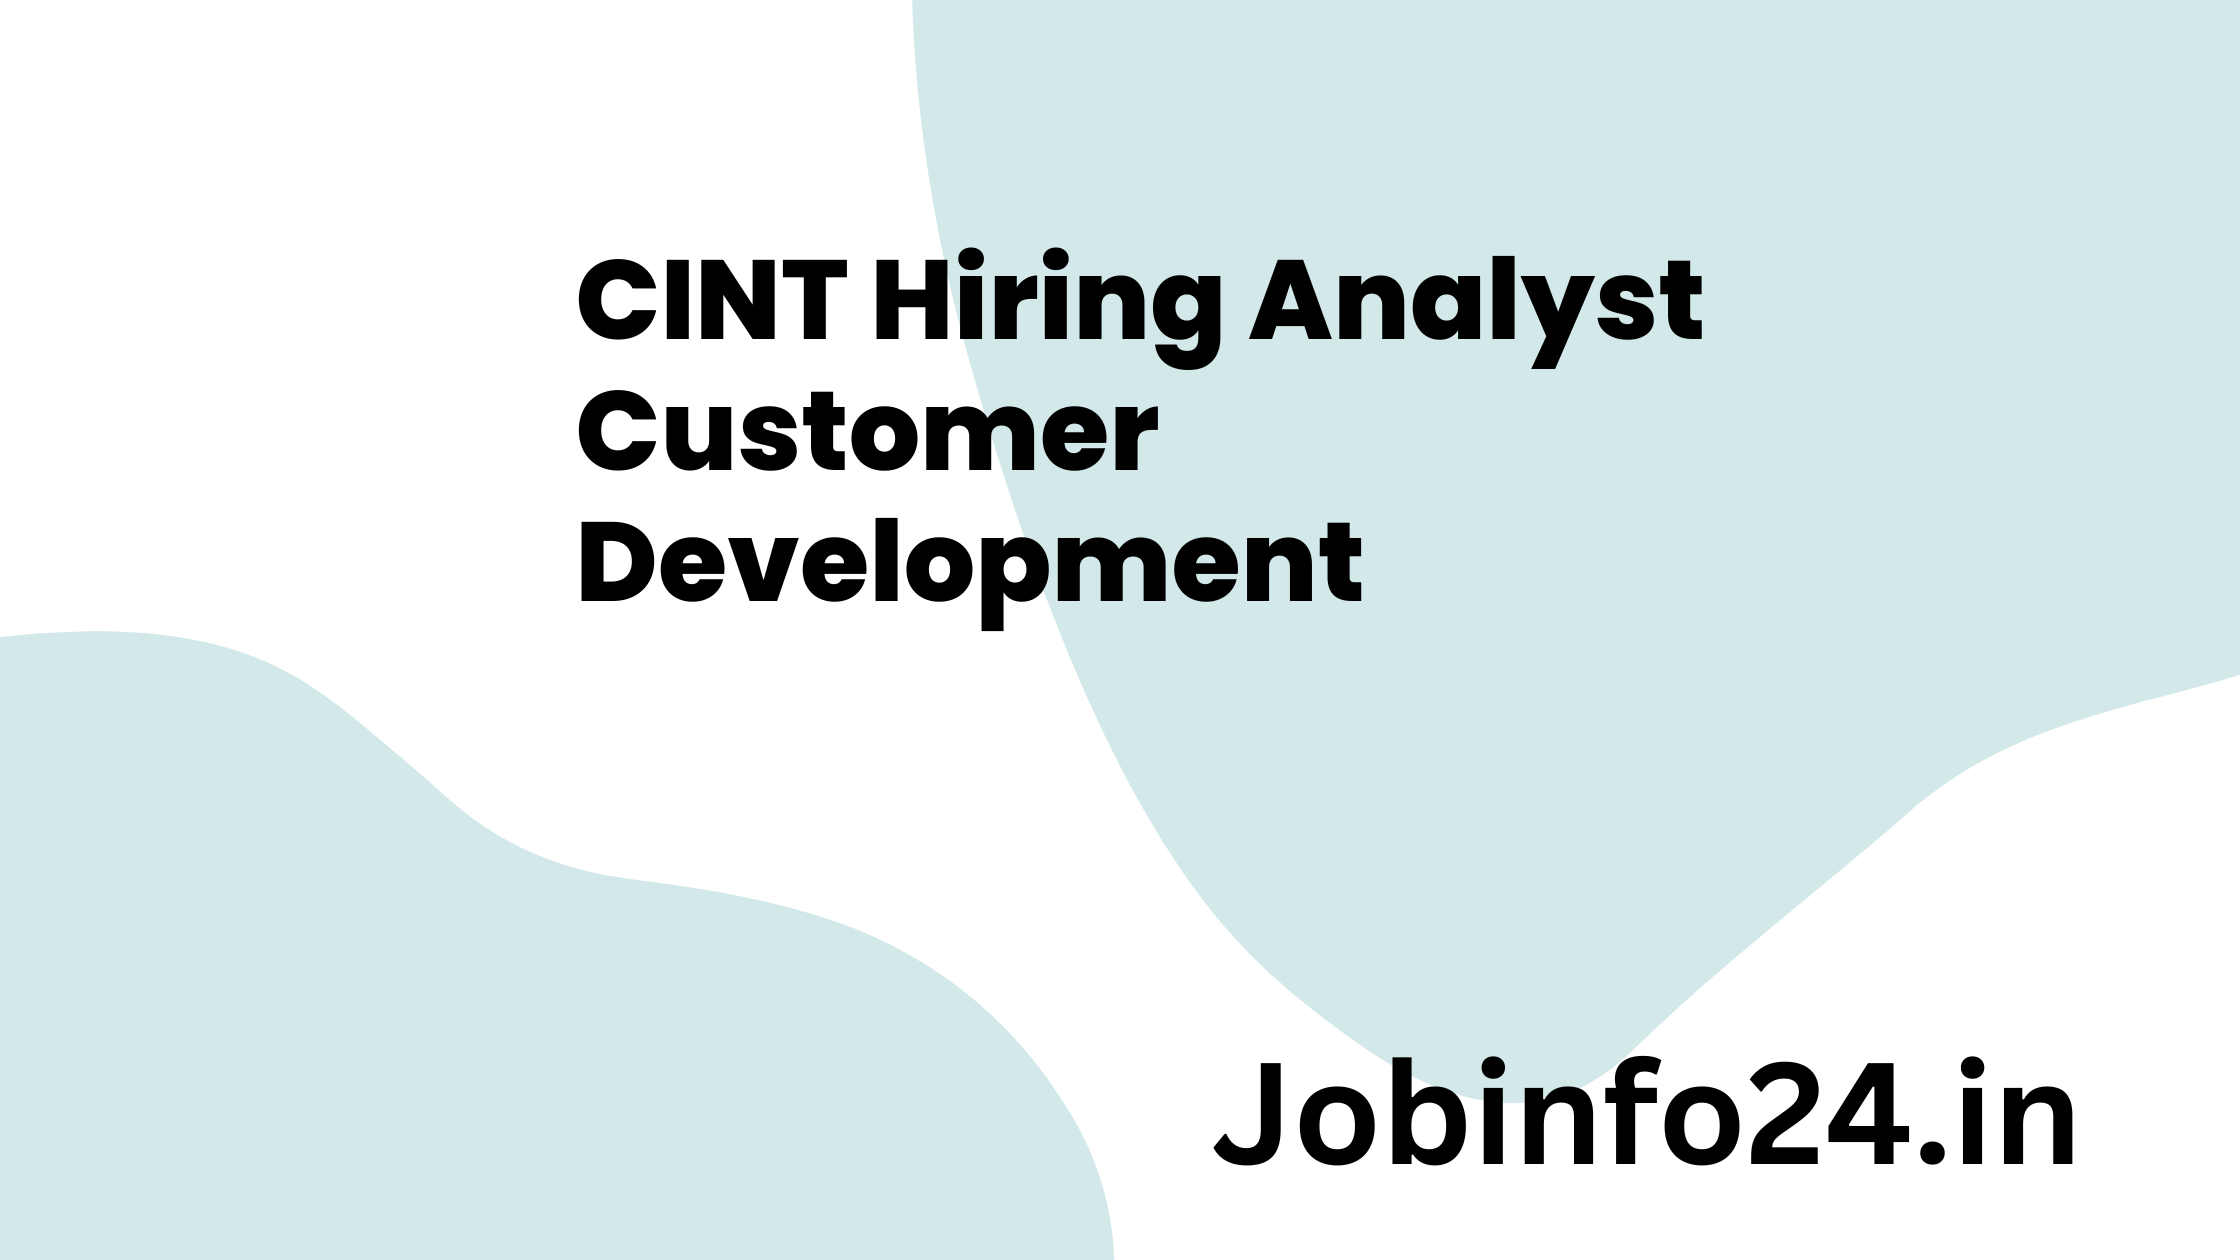 CINT Hiring Analyst Customer Development